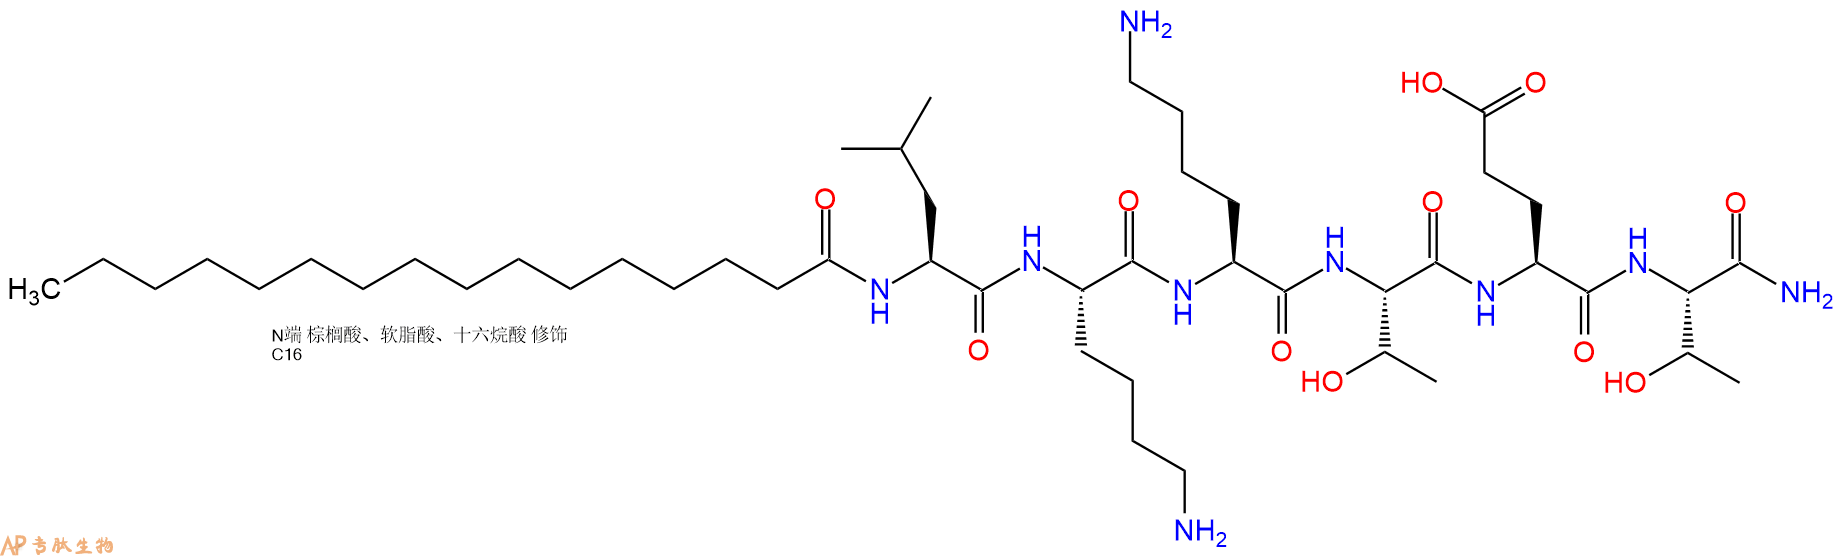 专肽生物产品PAL-Leu-Lys-Lys-Thr-Glu-Thr-NH2